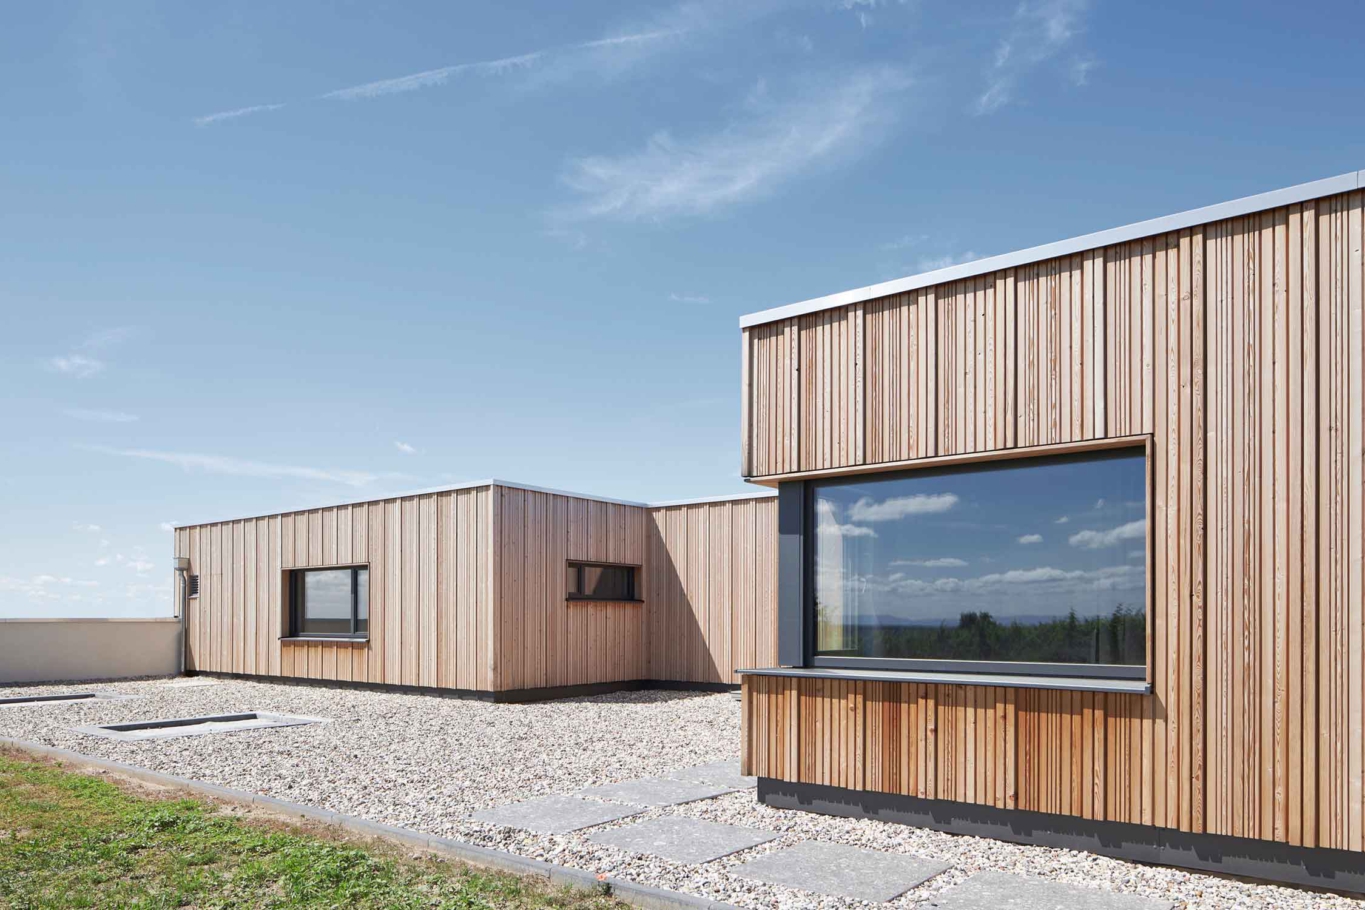 Architekturfotografie Lioba Schneider: engels Architekten haben in den Weinbergen der Pfalz einen weitläufigen Bungalow aus Holz gebaut, mit überkragendem Dach und großen Fensterfronten.